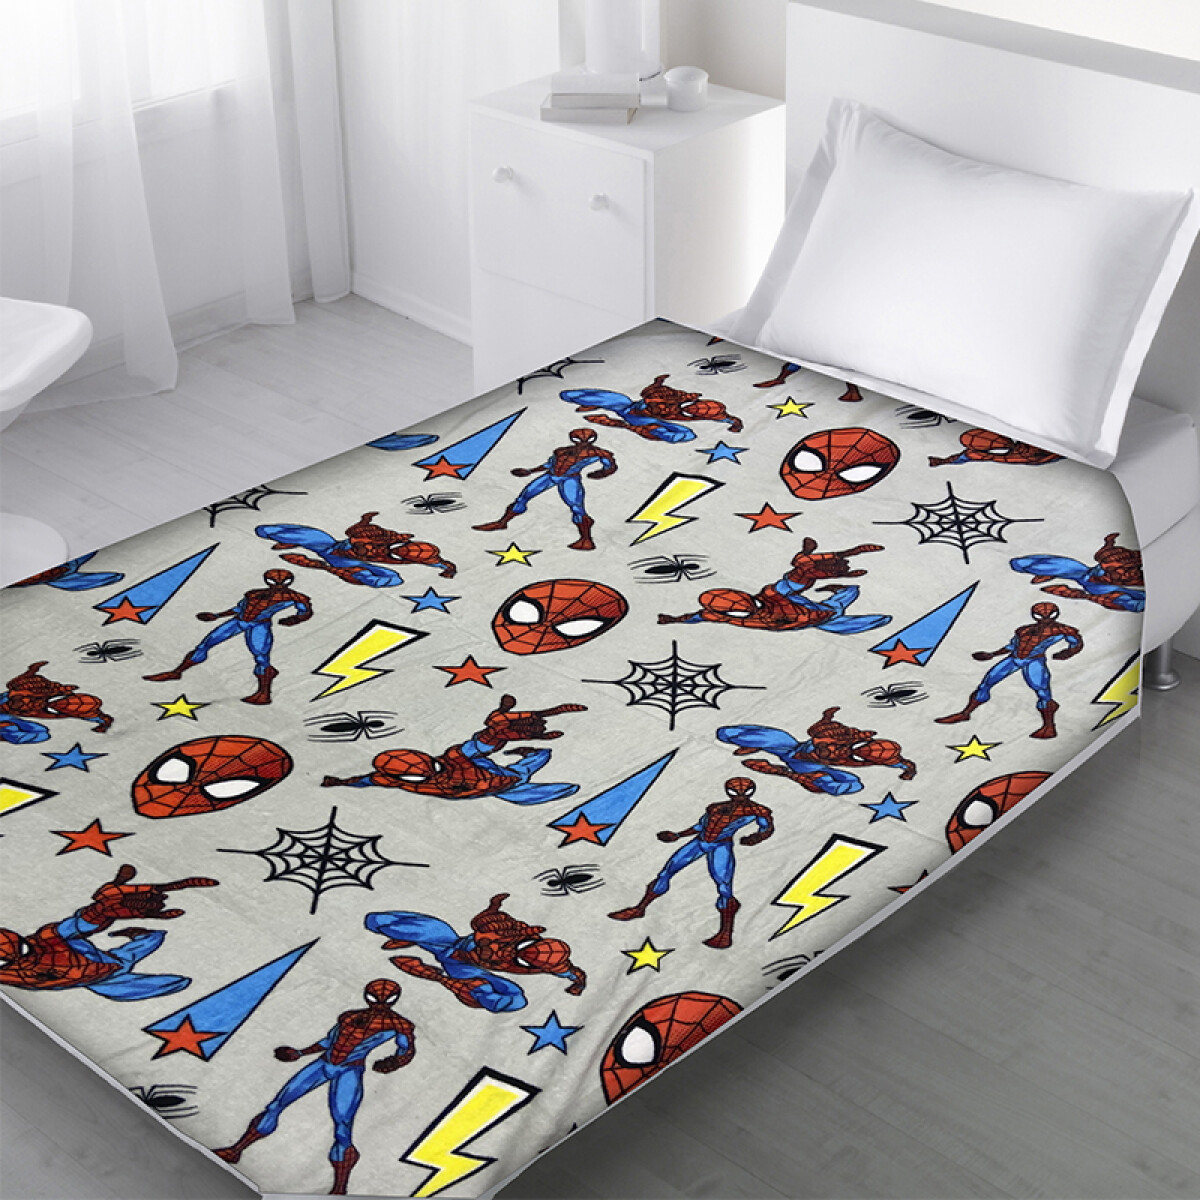 Frazada Infantil Flannel Spiderman 120 x 160 cm 